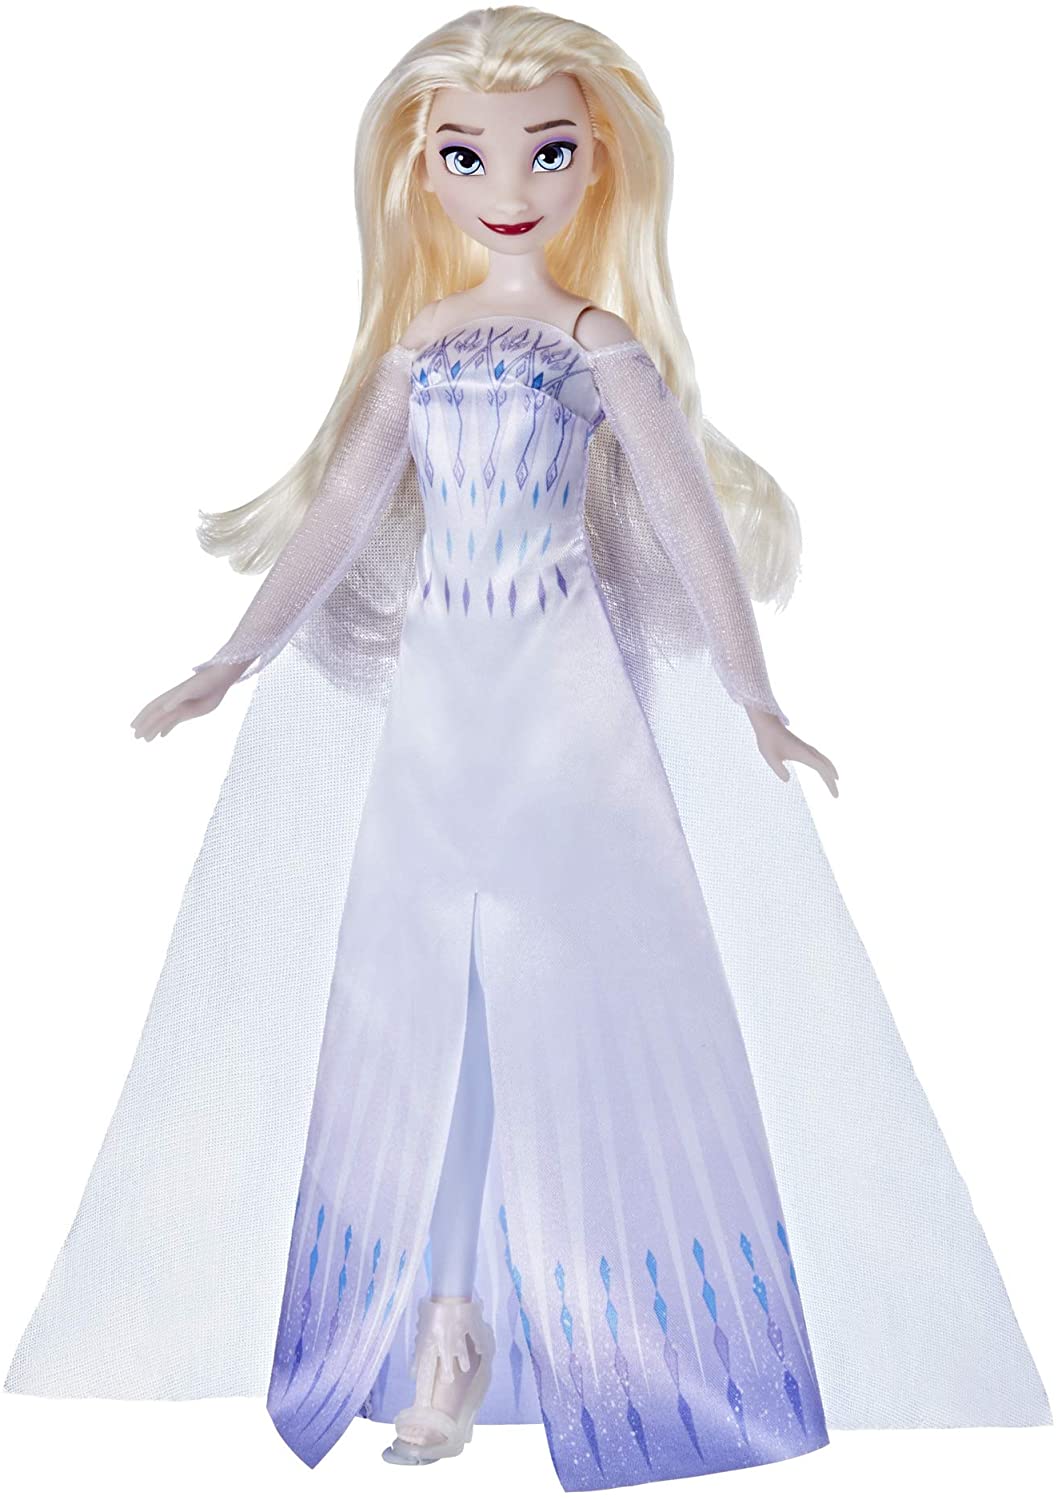 Boneca Disney Frozen 2 Rainha Elsa - Hasbro F1411